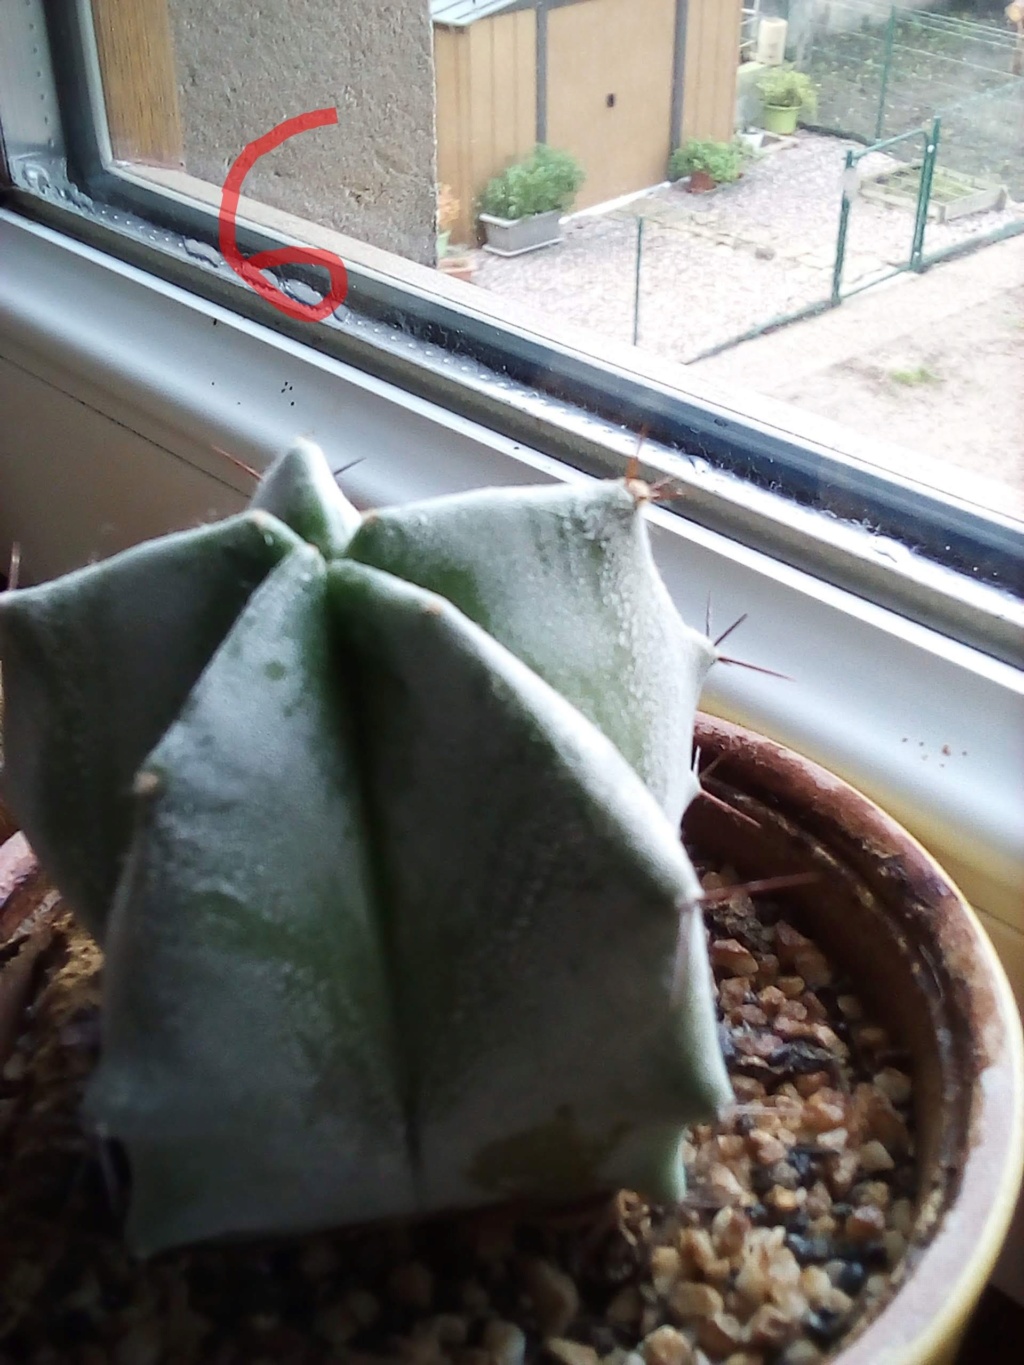 Besoin d'aide pour identifier les cactus/plantes grasses Img_2070